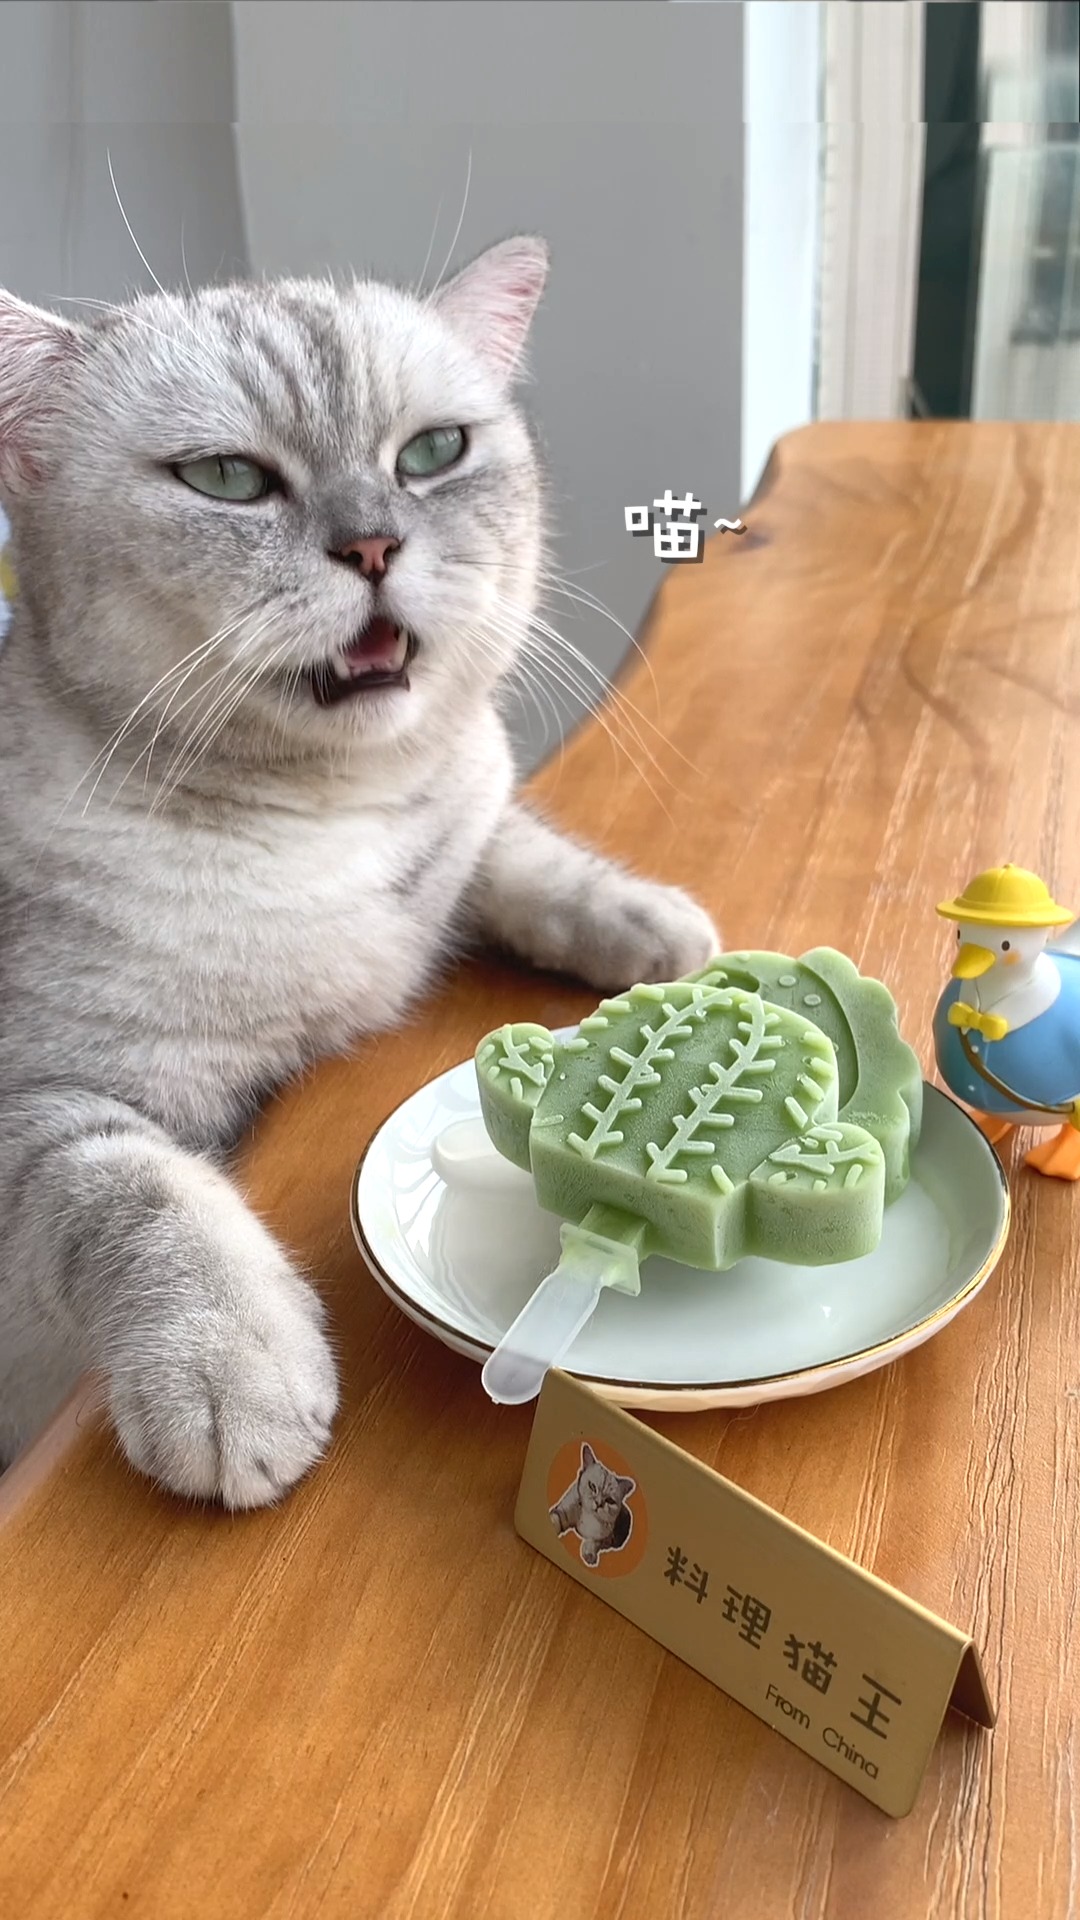  猫王：你吃过仙人掌吗？